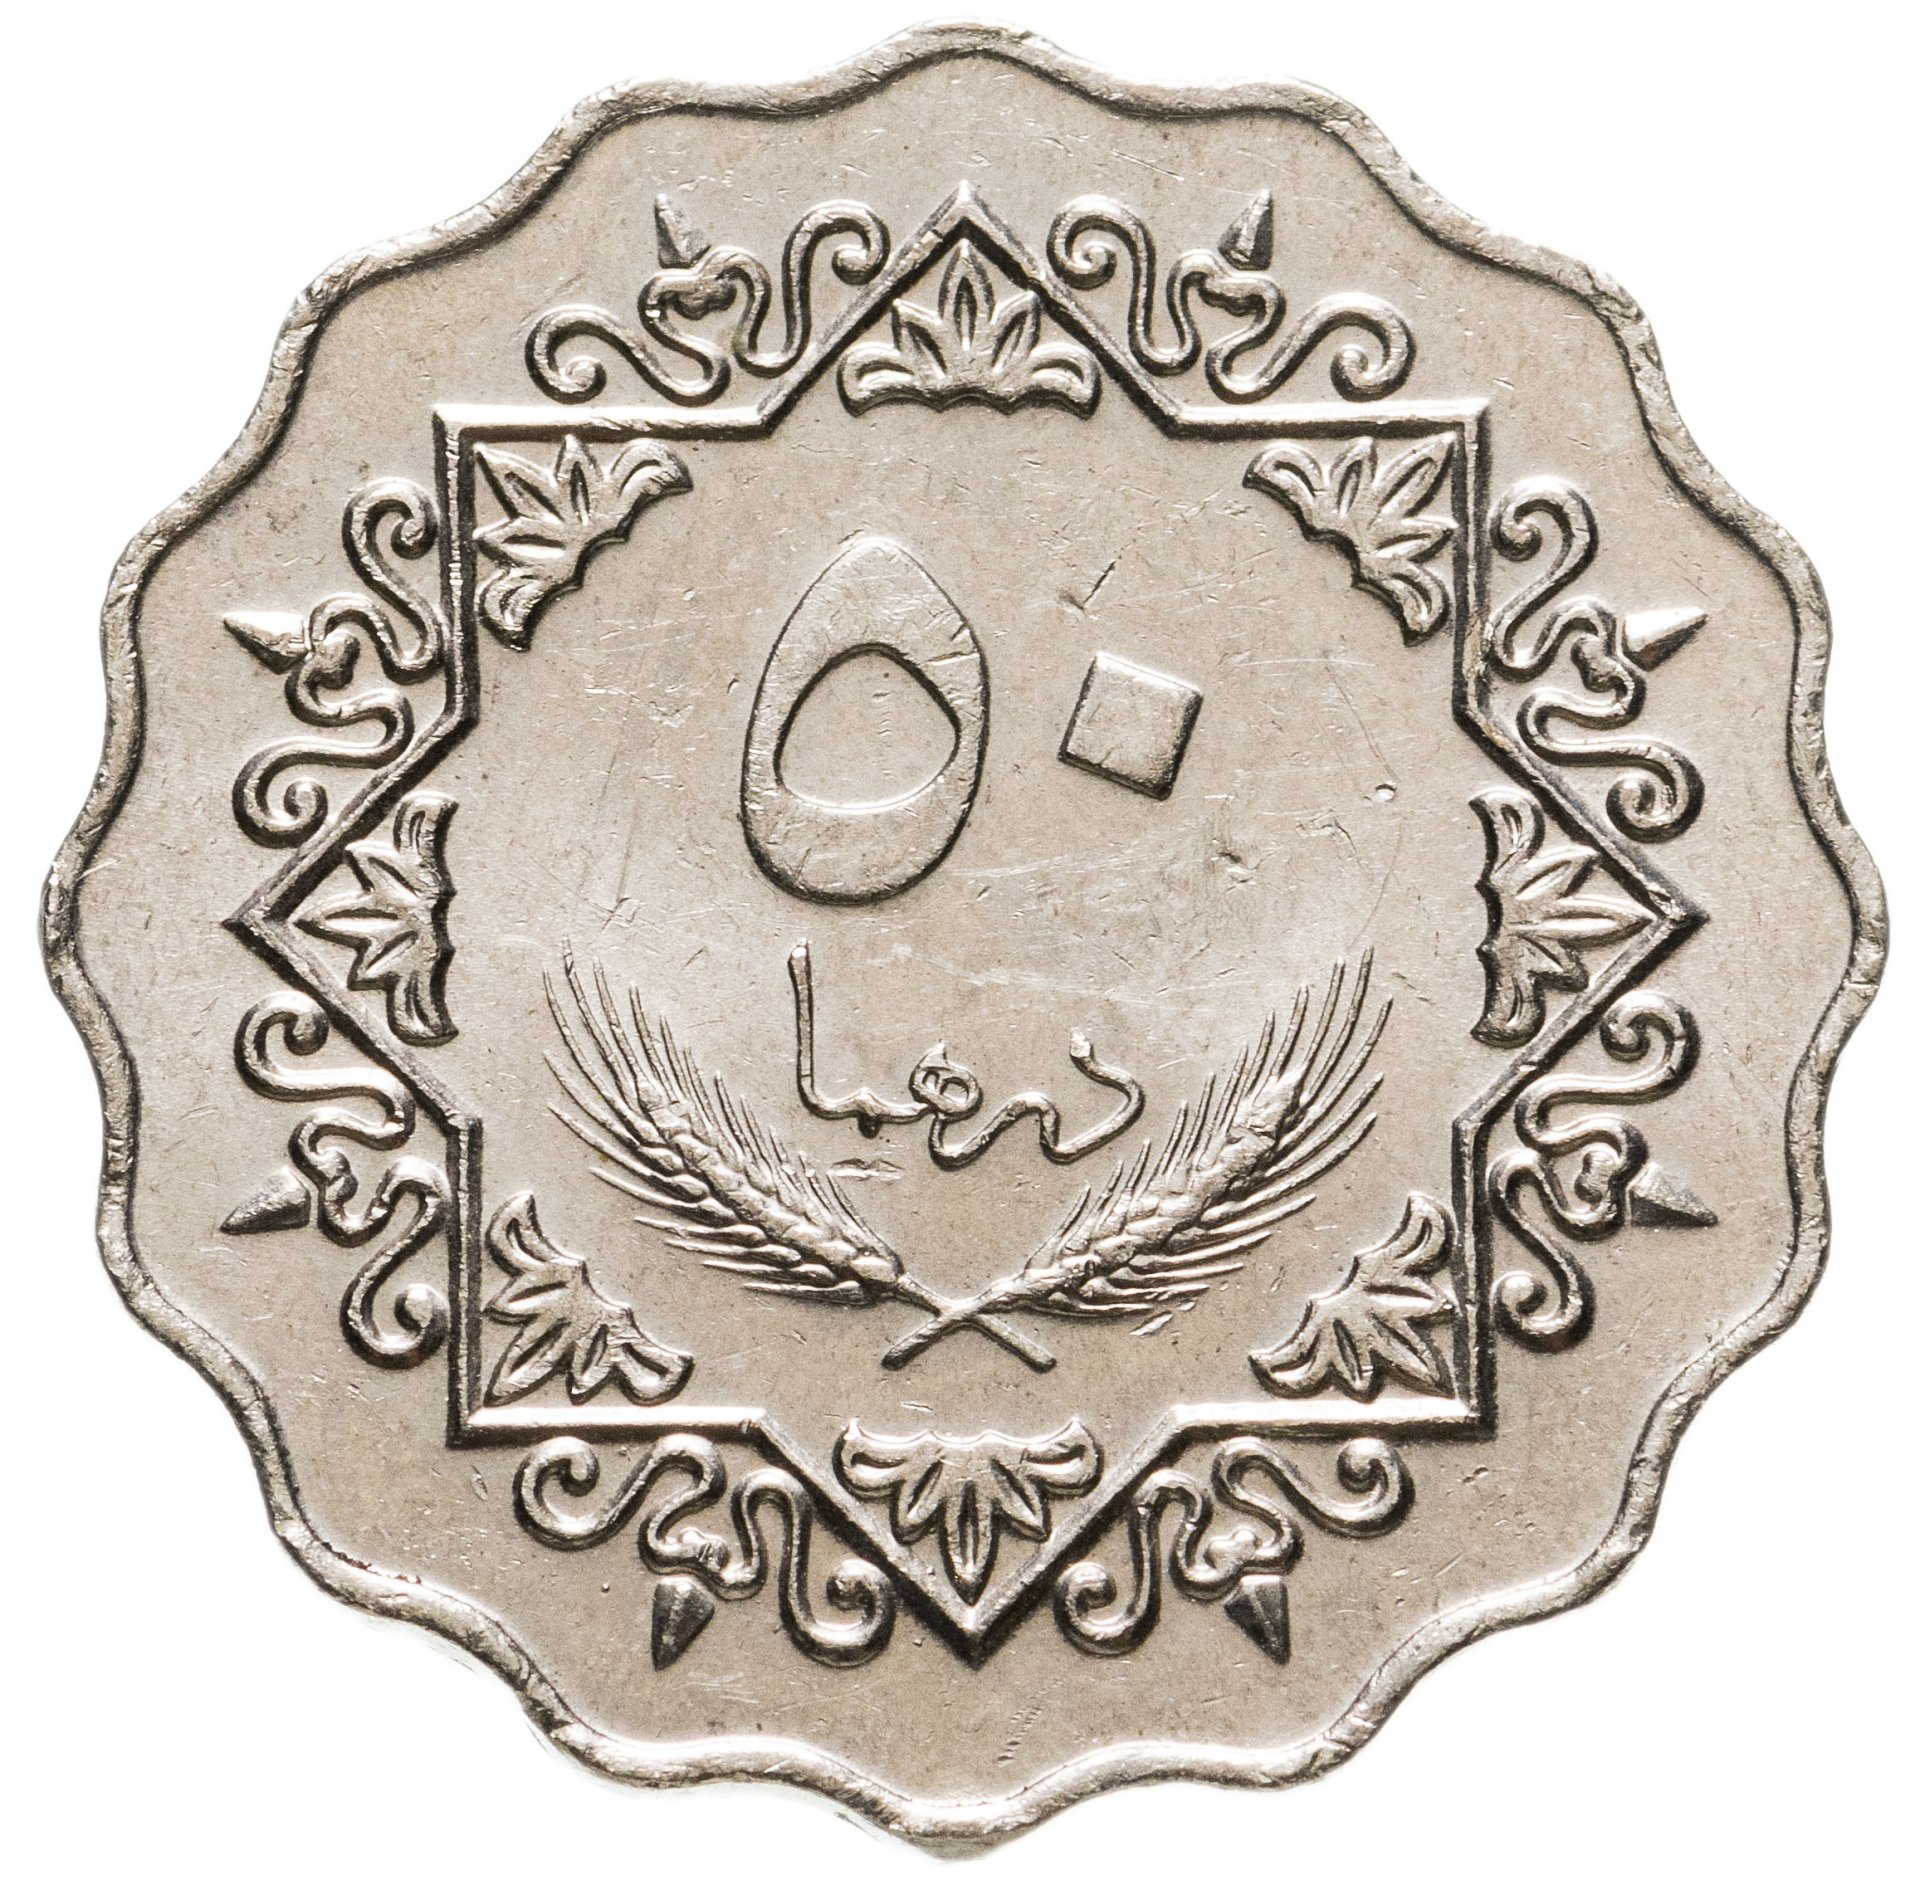 24 дирхам. Ливия 50 дирхамов 1979. Монета с арабской вязью 50. Монеты ливийской Джамахирии. Старинные арабские монеты.